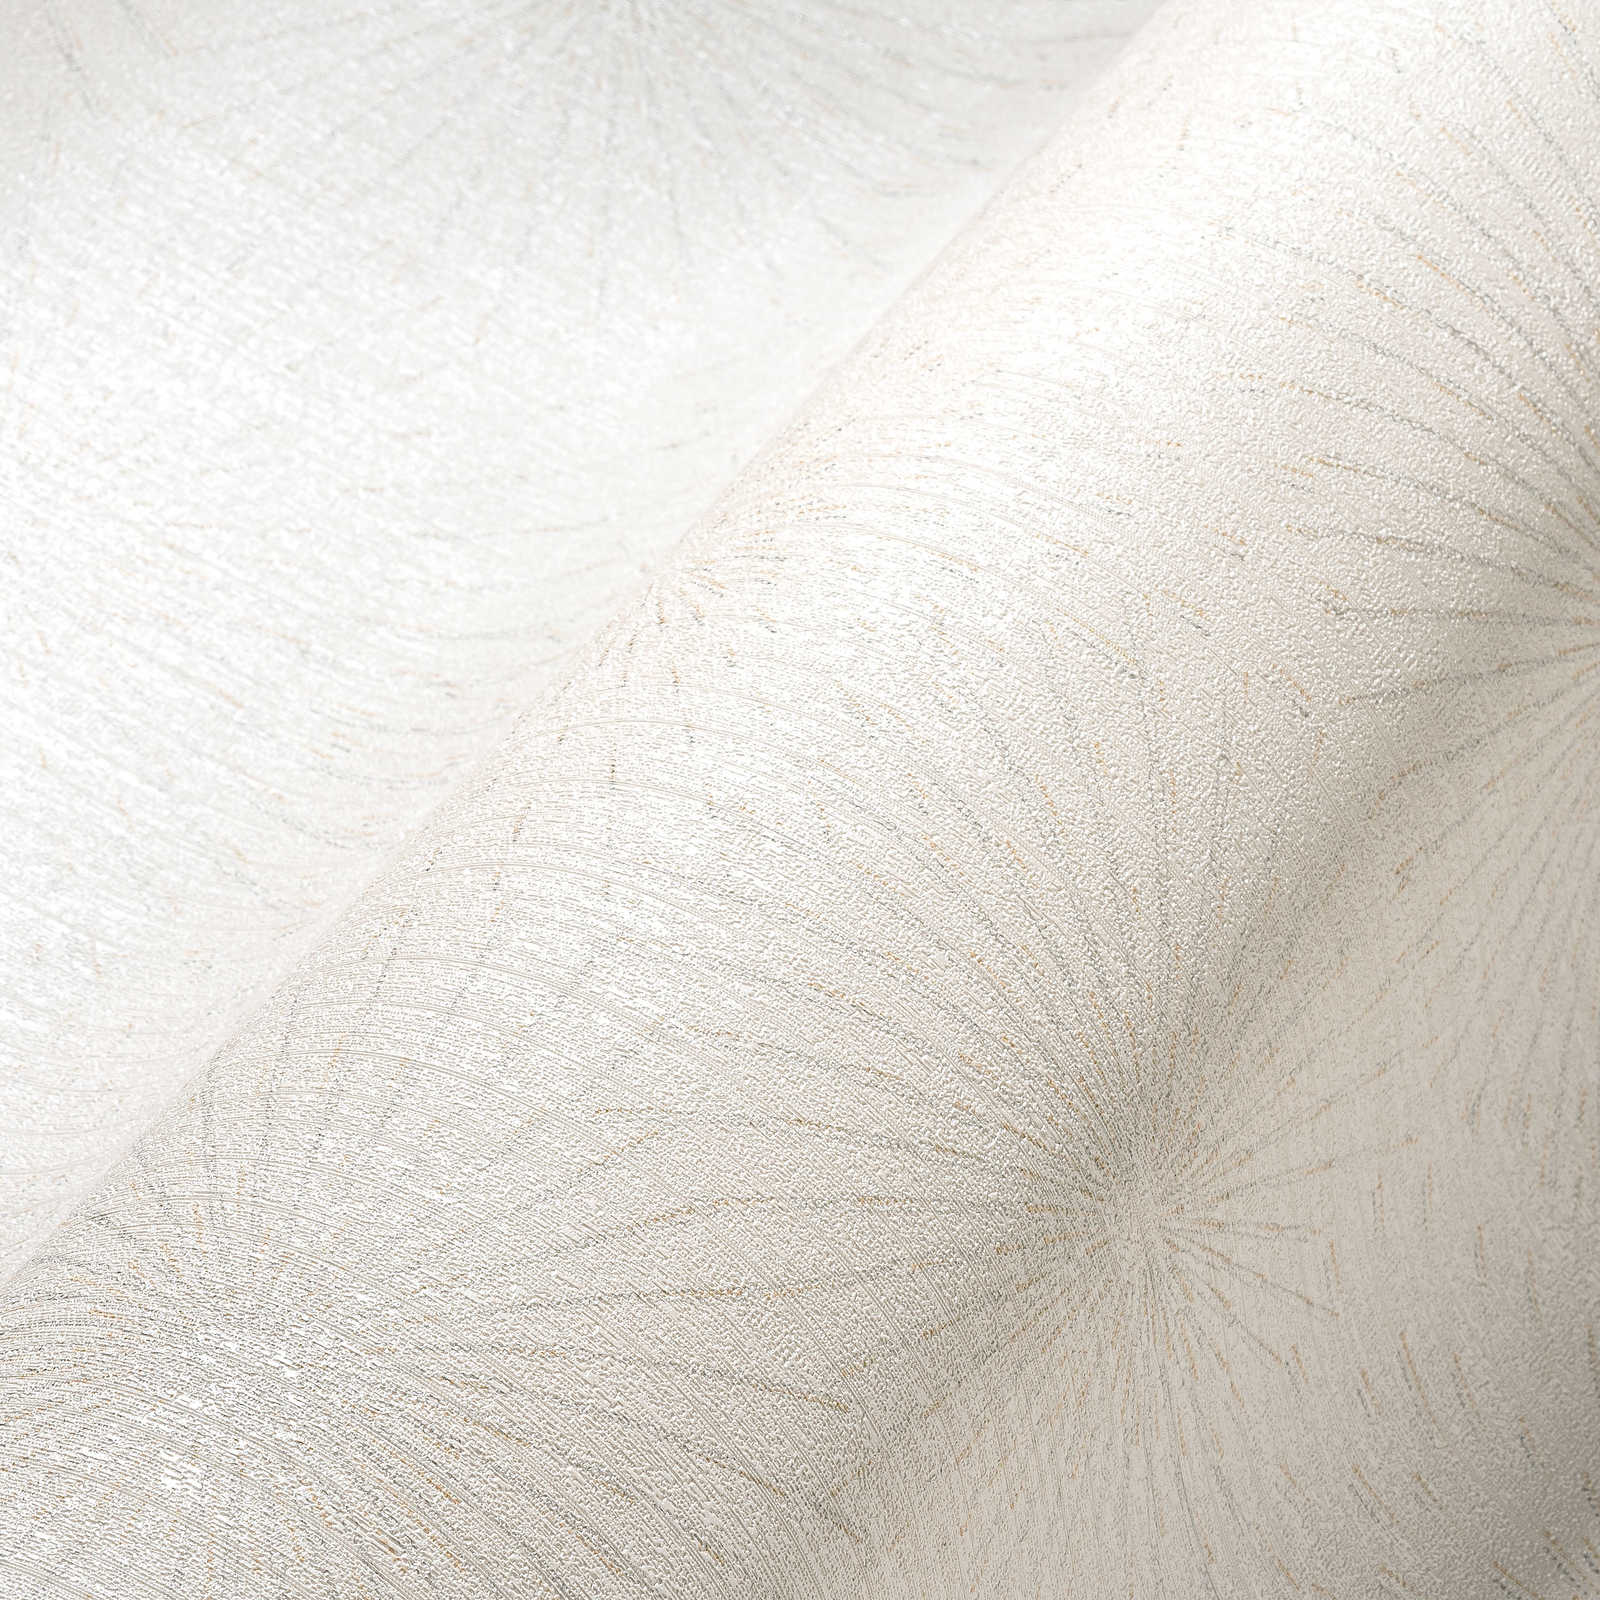             Papier peint blanc avec motif rétro métallisé Starburst - Blanc
        